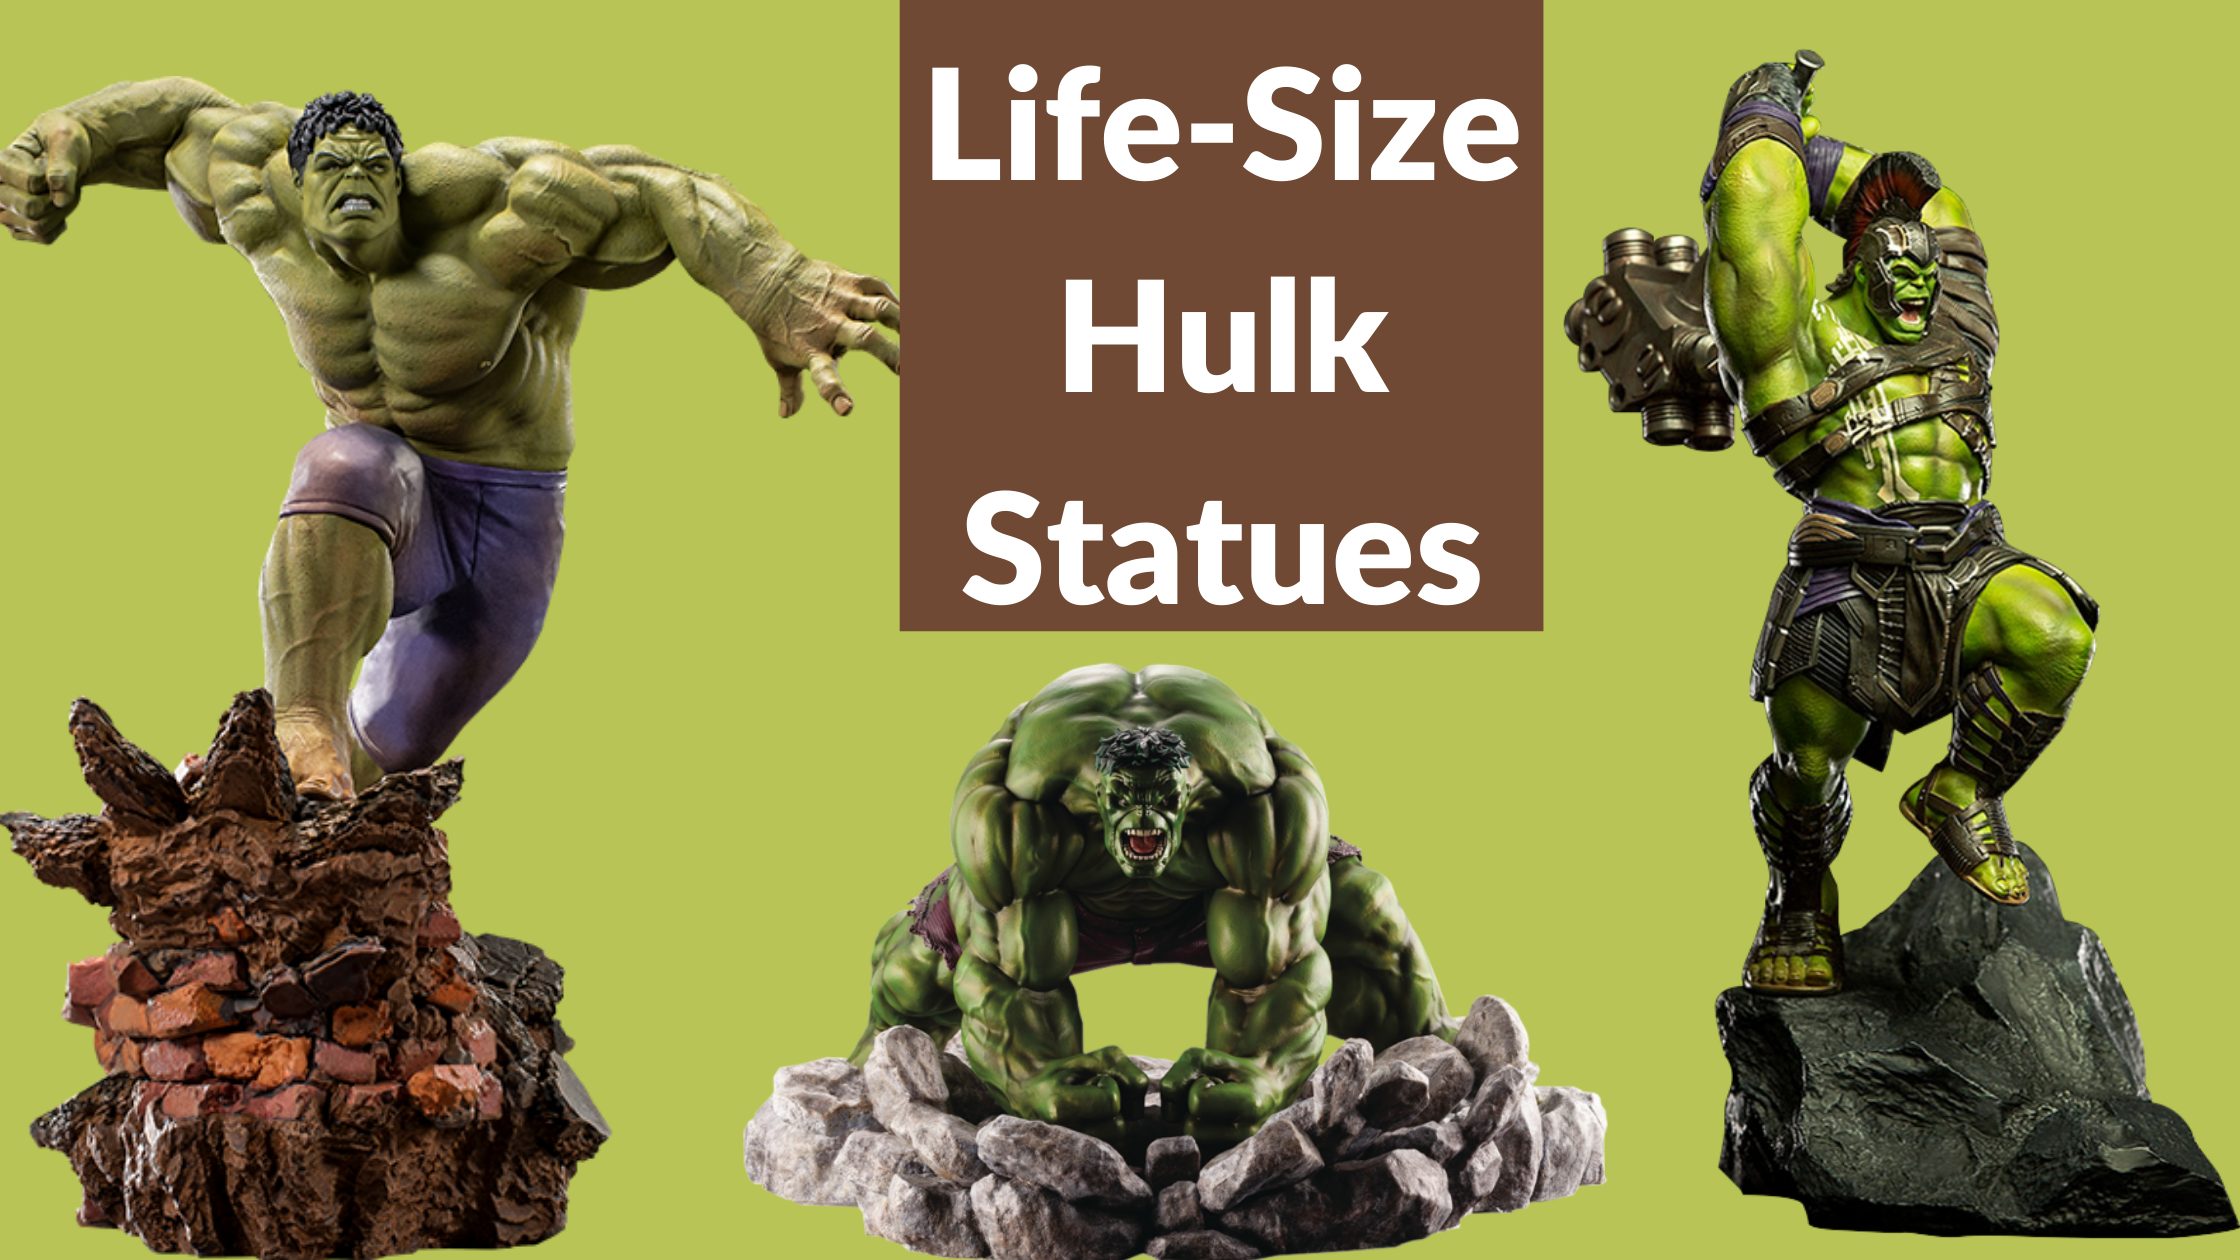 hulk sculpture